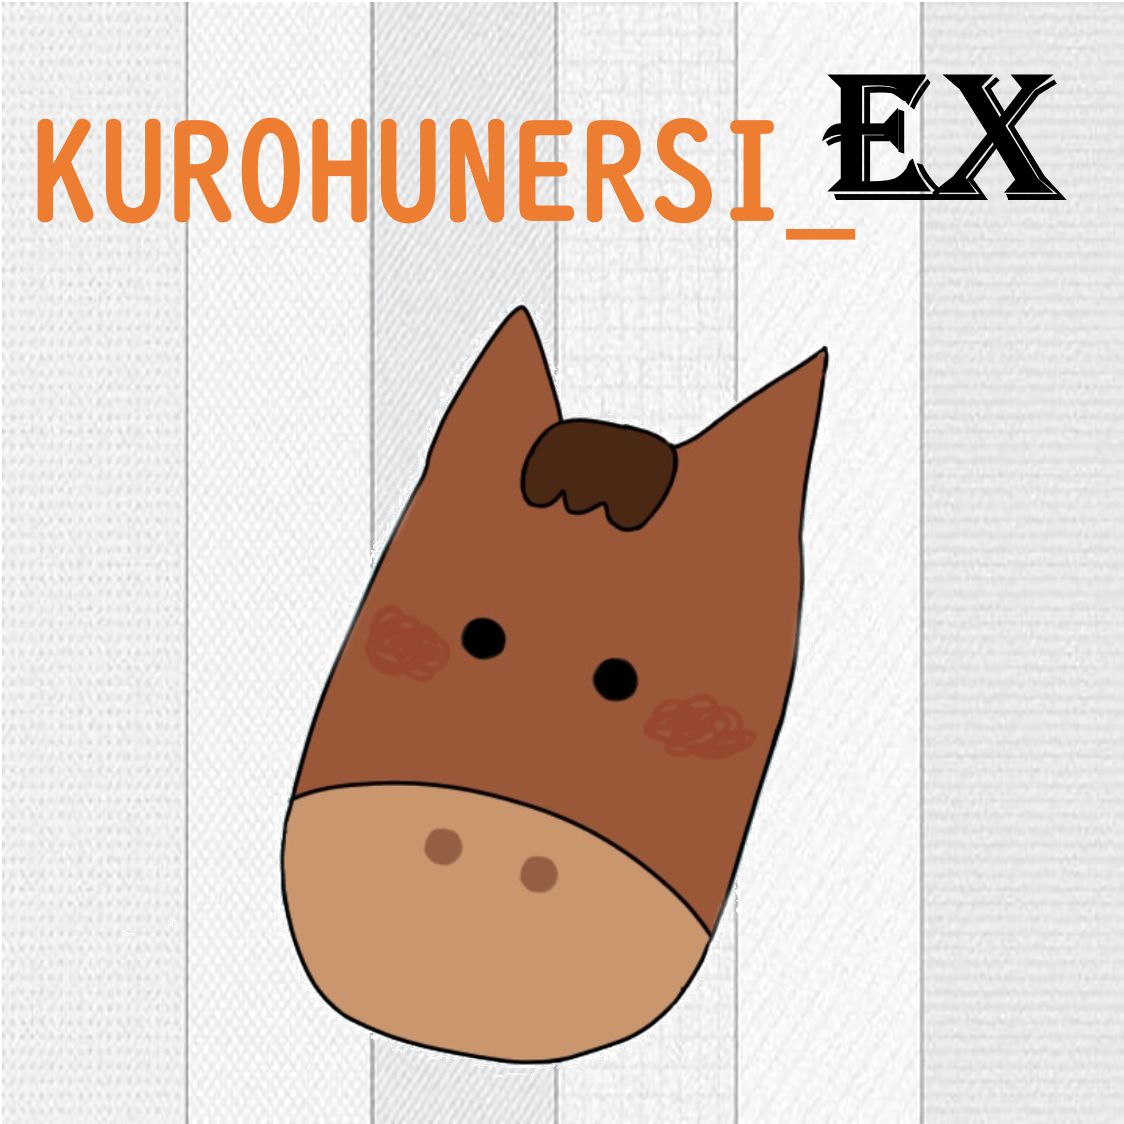 KUROHUNERSI_EX インジケーター・電子書籍